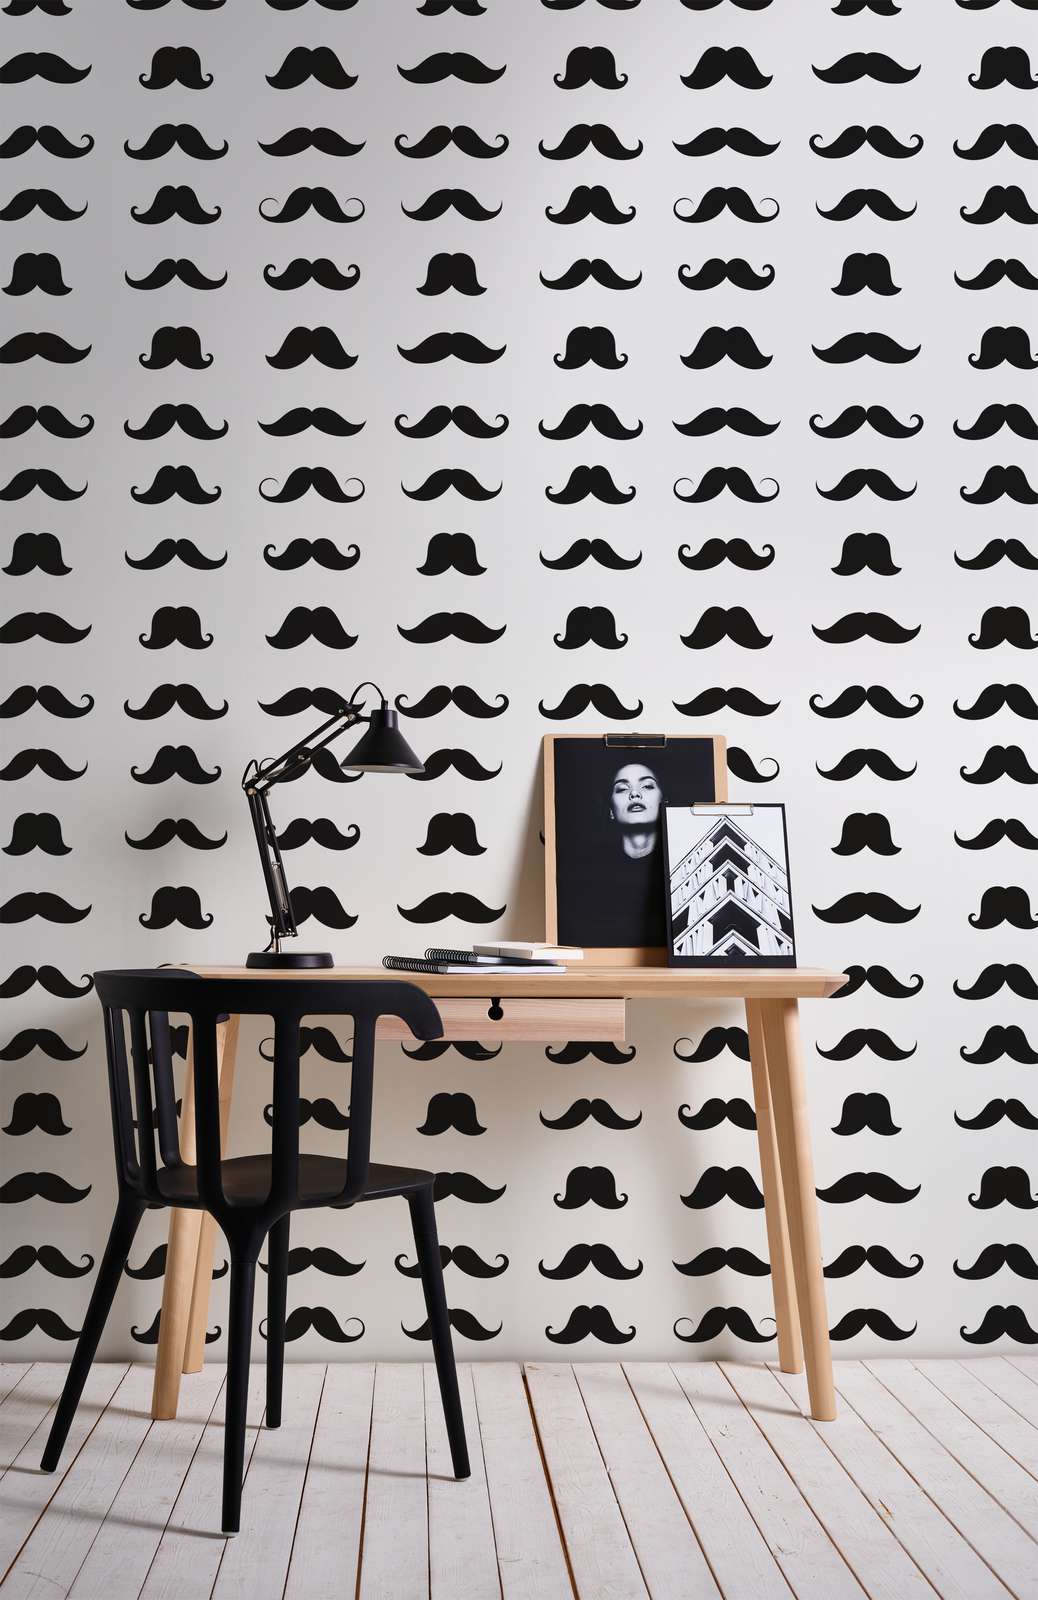             Fototapete Mustache cooles Schnäuzer Motiv – Schwarz-Weiß – Premium Glattvlies
        